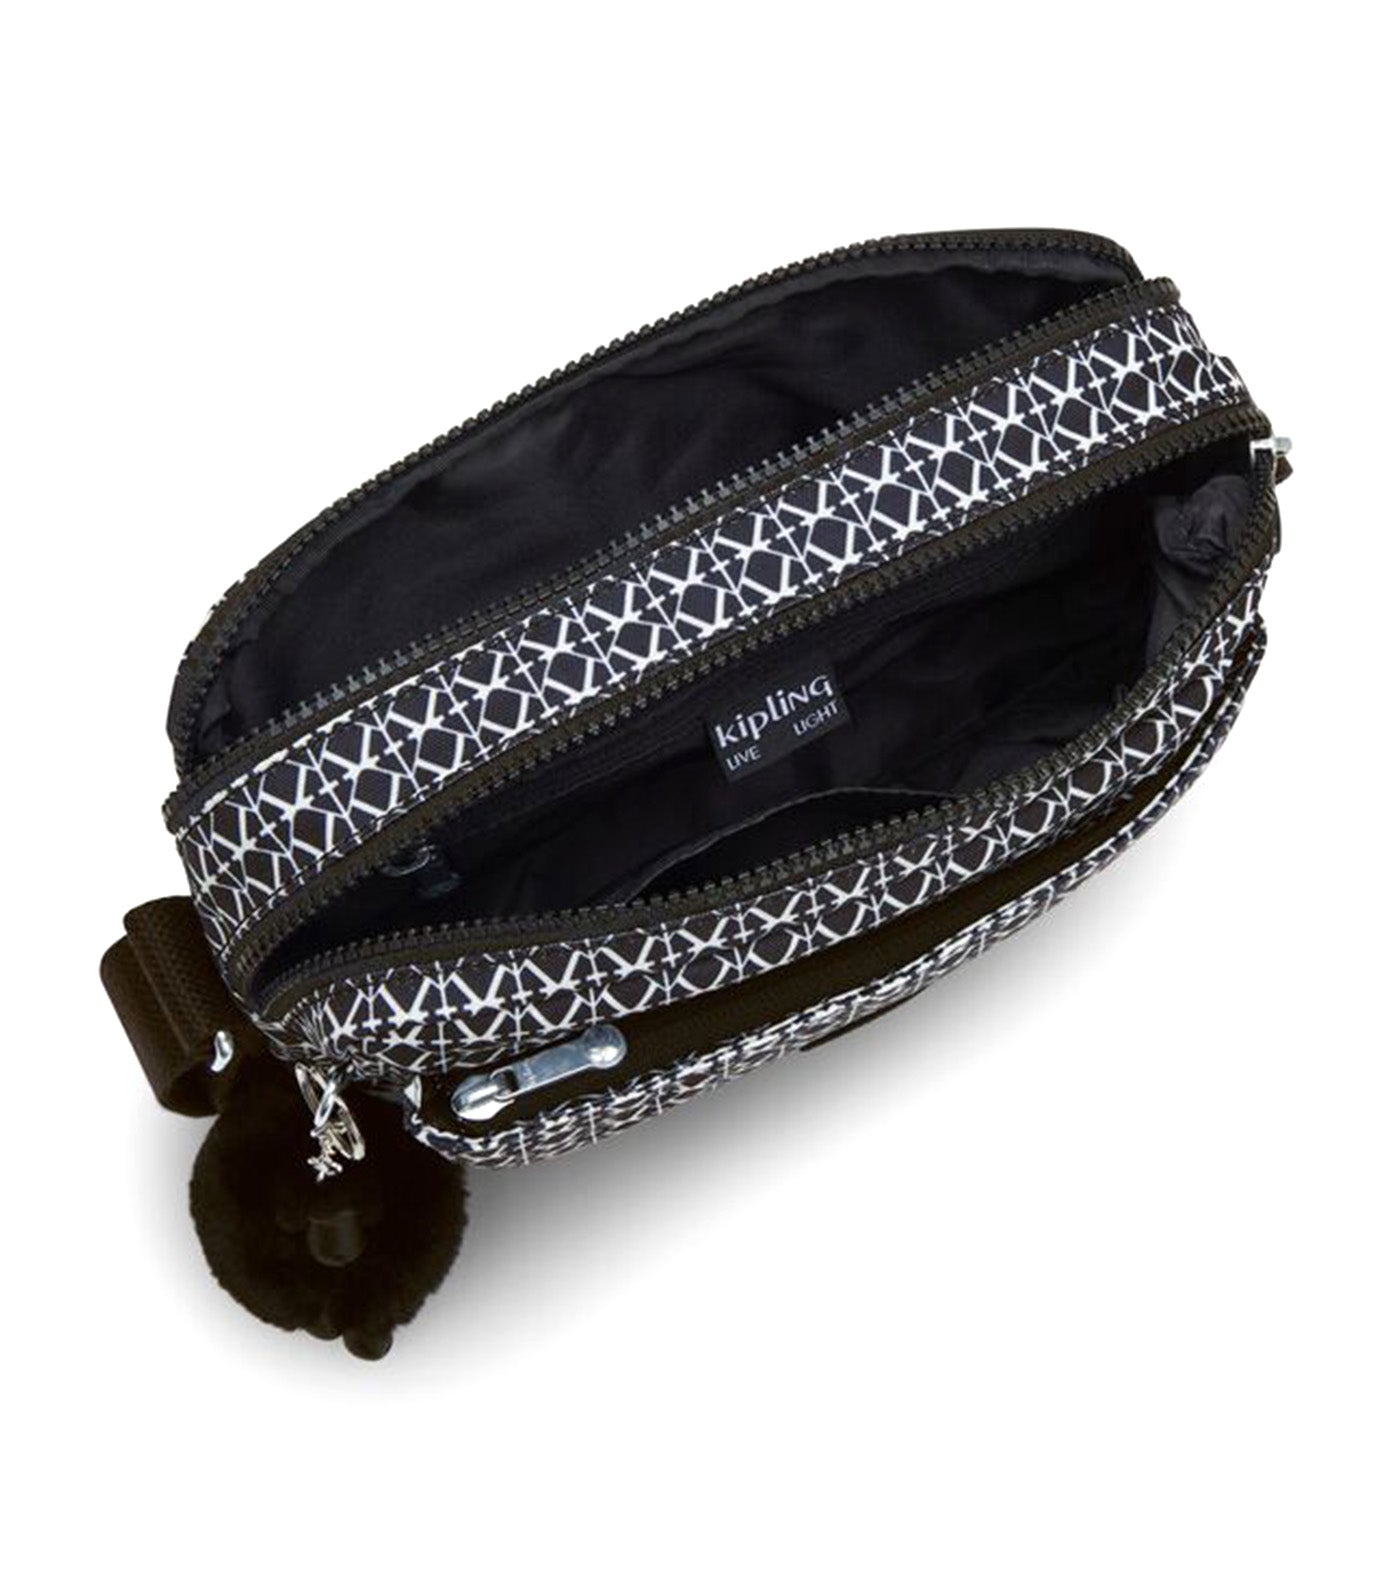 Abanu Medium Crossbody Bag Black